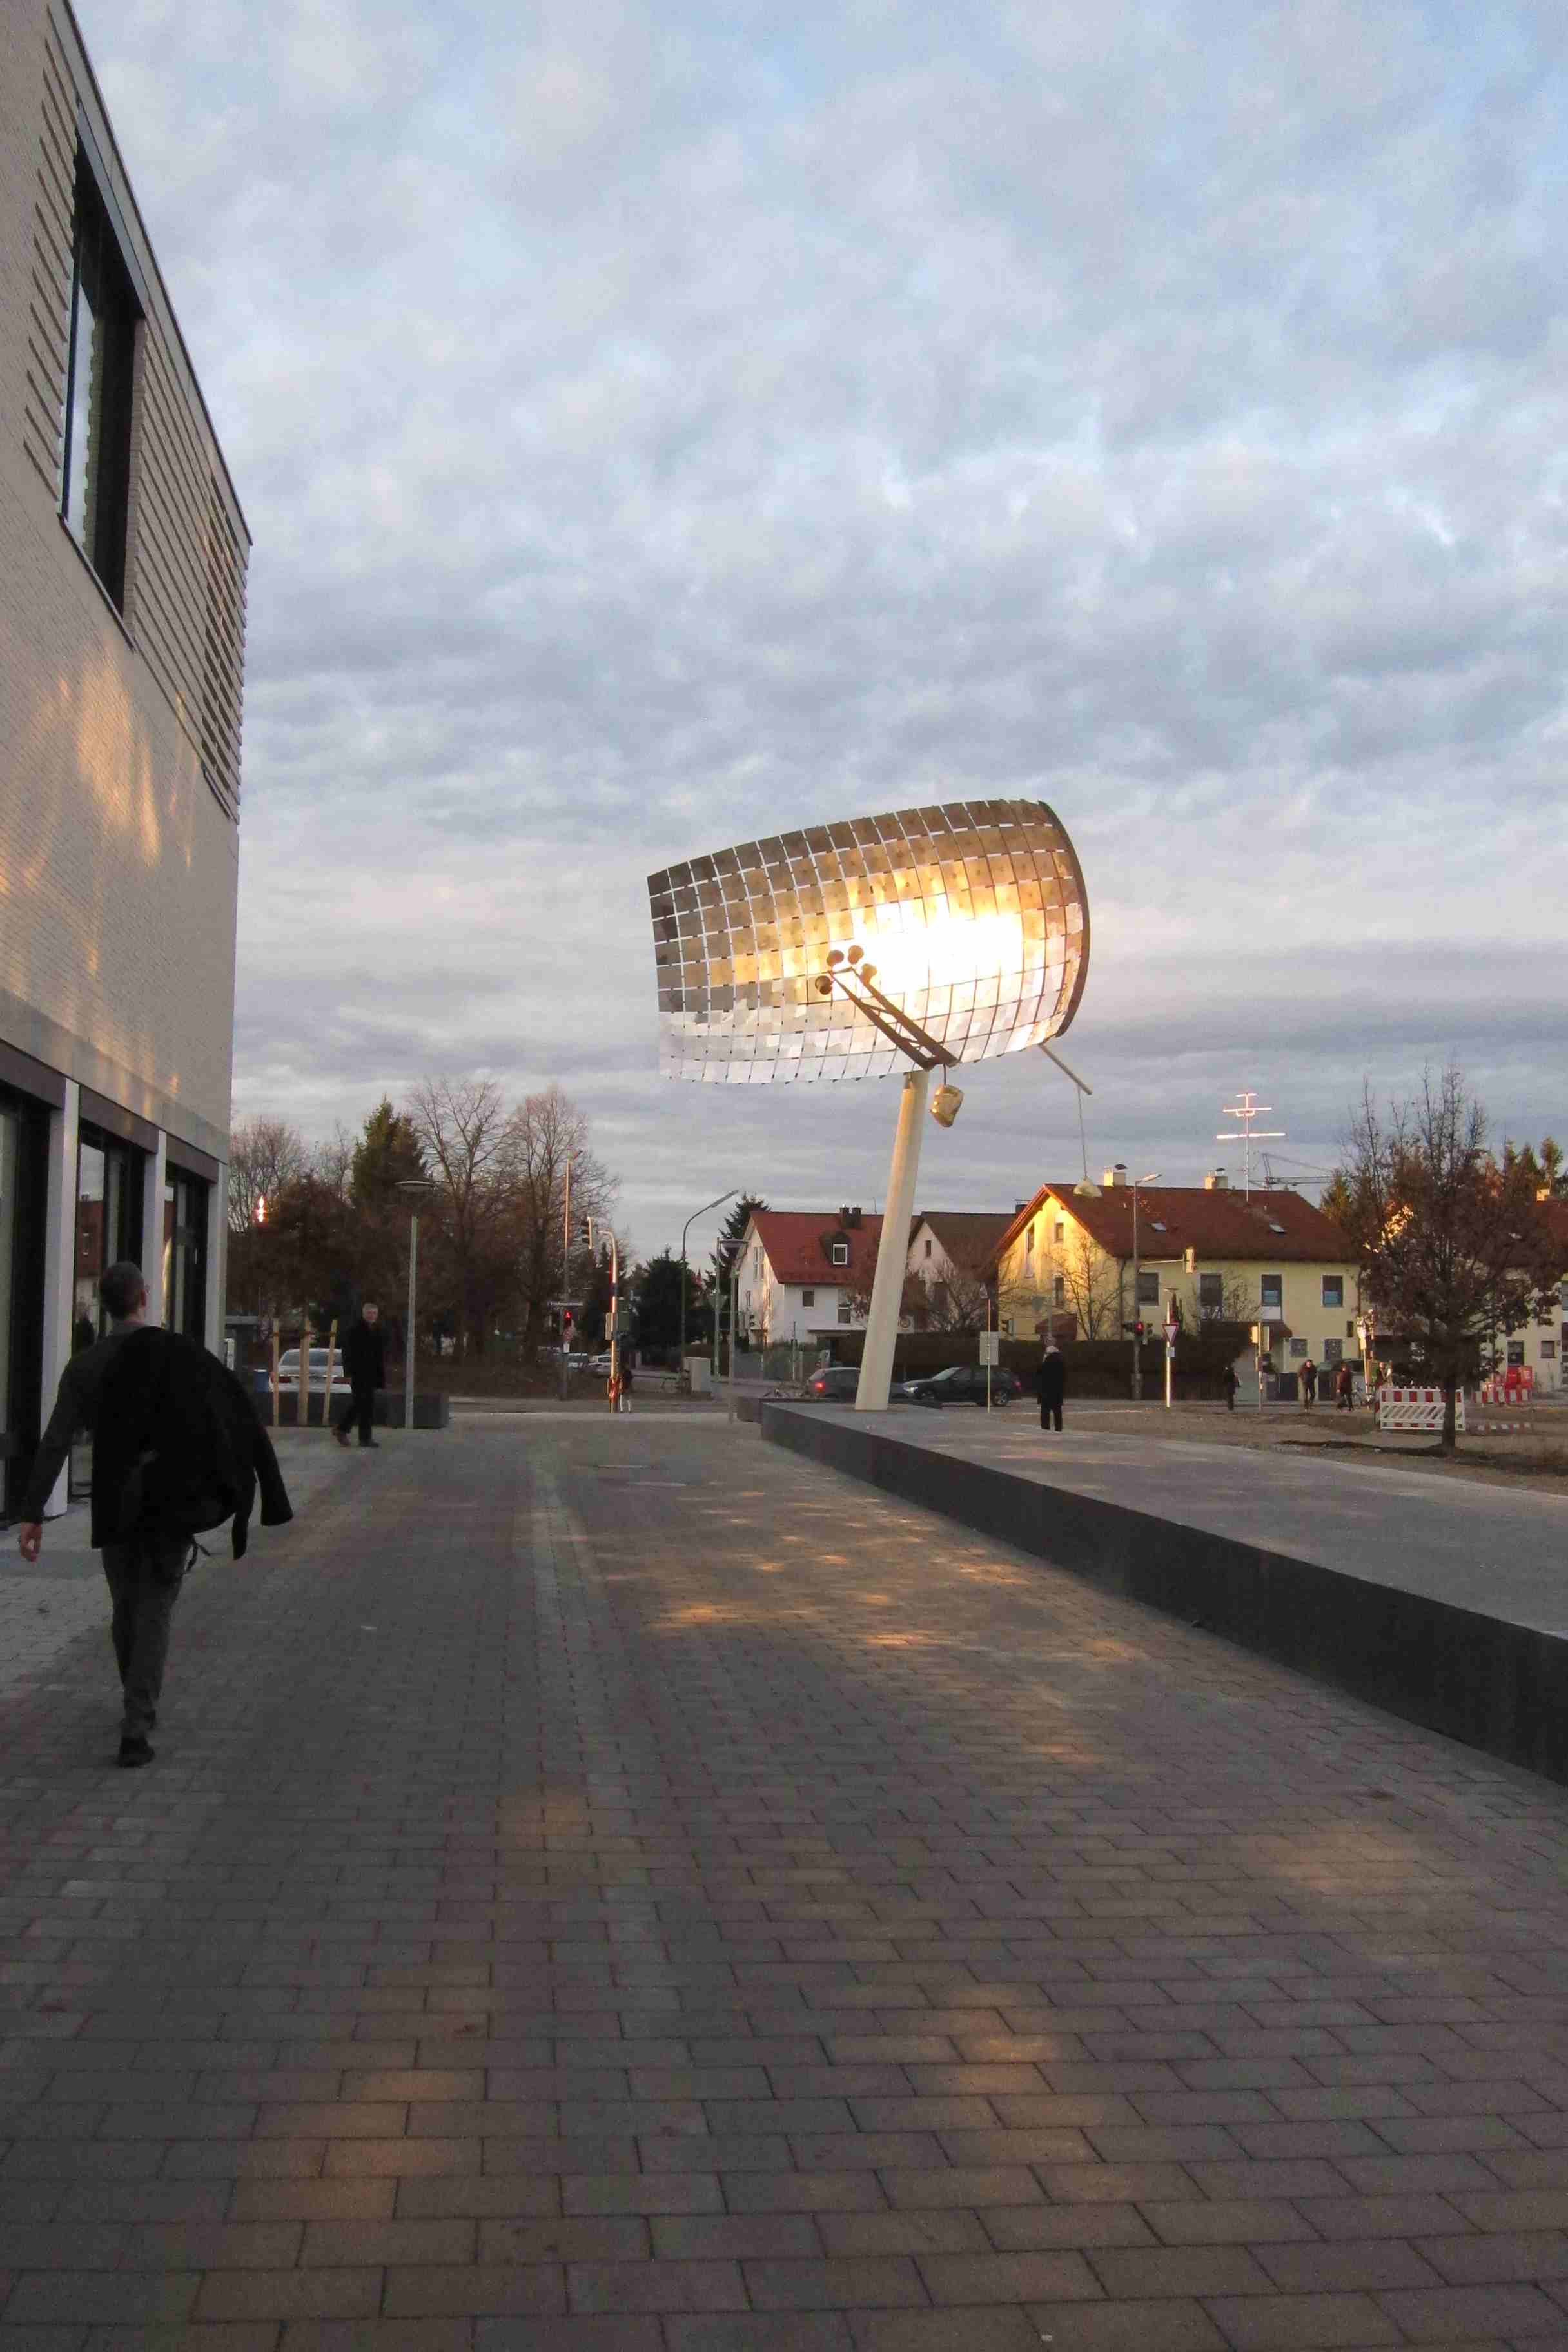  Public Art: "Platz an der Sonne" - Sculpture with Light Reflections - Photo: Gabriele Obermaier